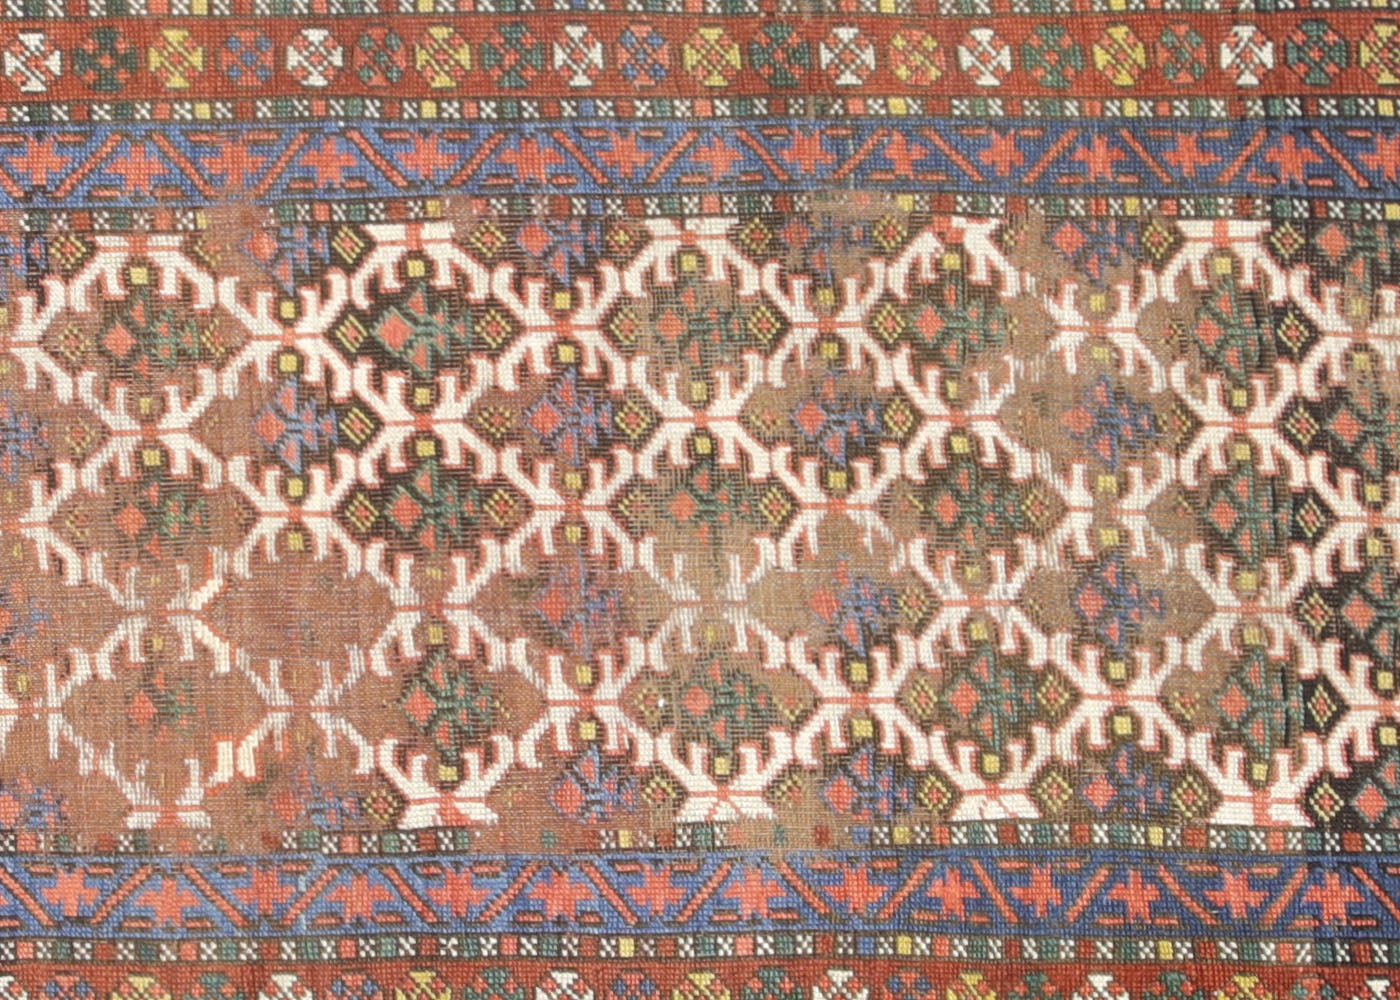 Antique Persian Heriz Runner - 3'2" x 13'9"